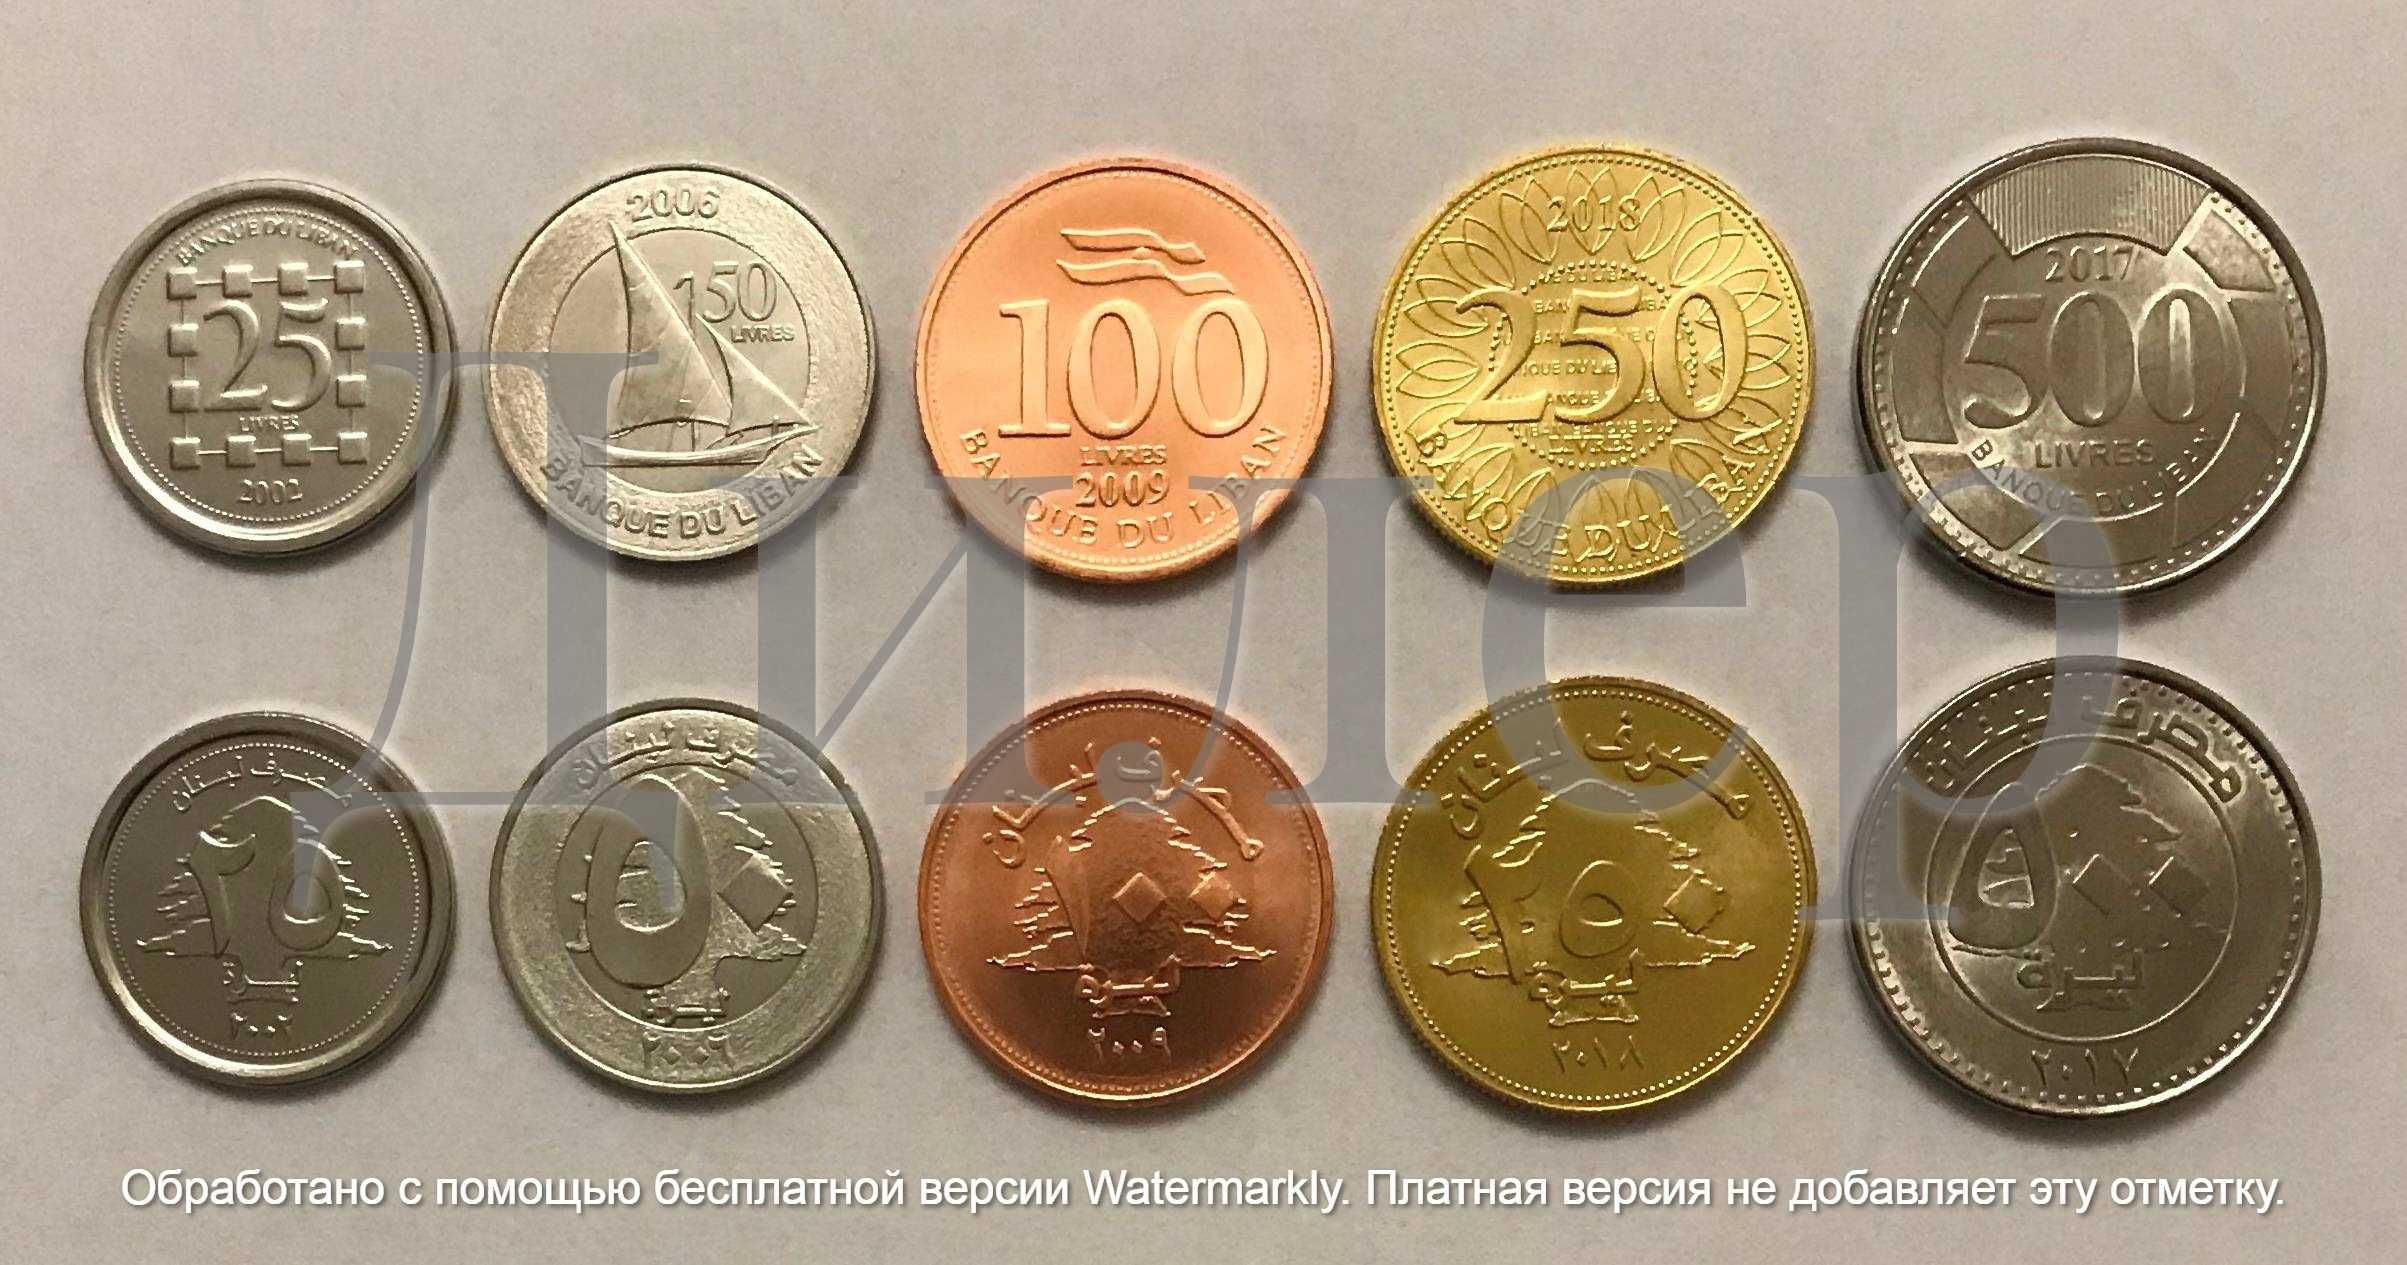 Наборы монет (Саудовская Аравия, Бахрейн, Ливан, Израиль и др.) UNC